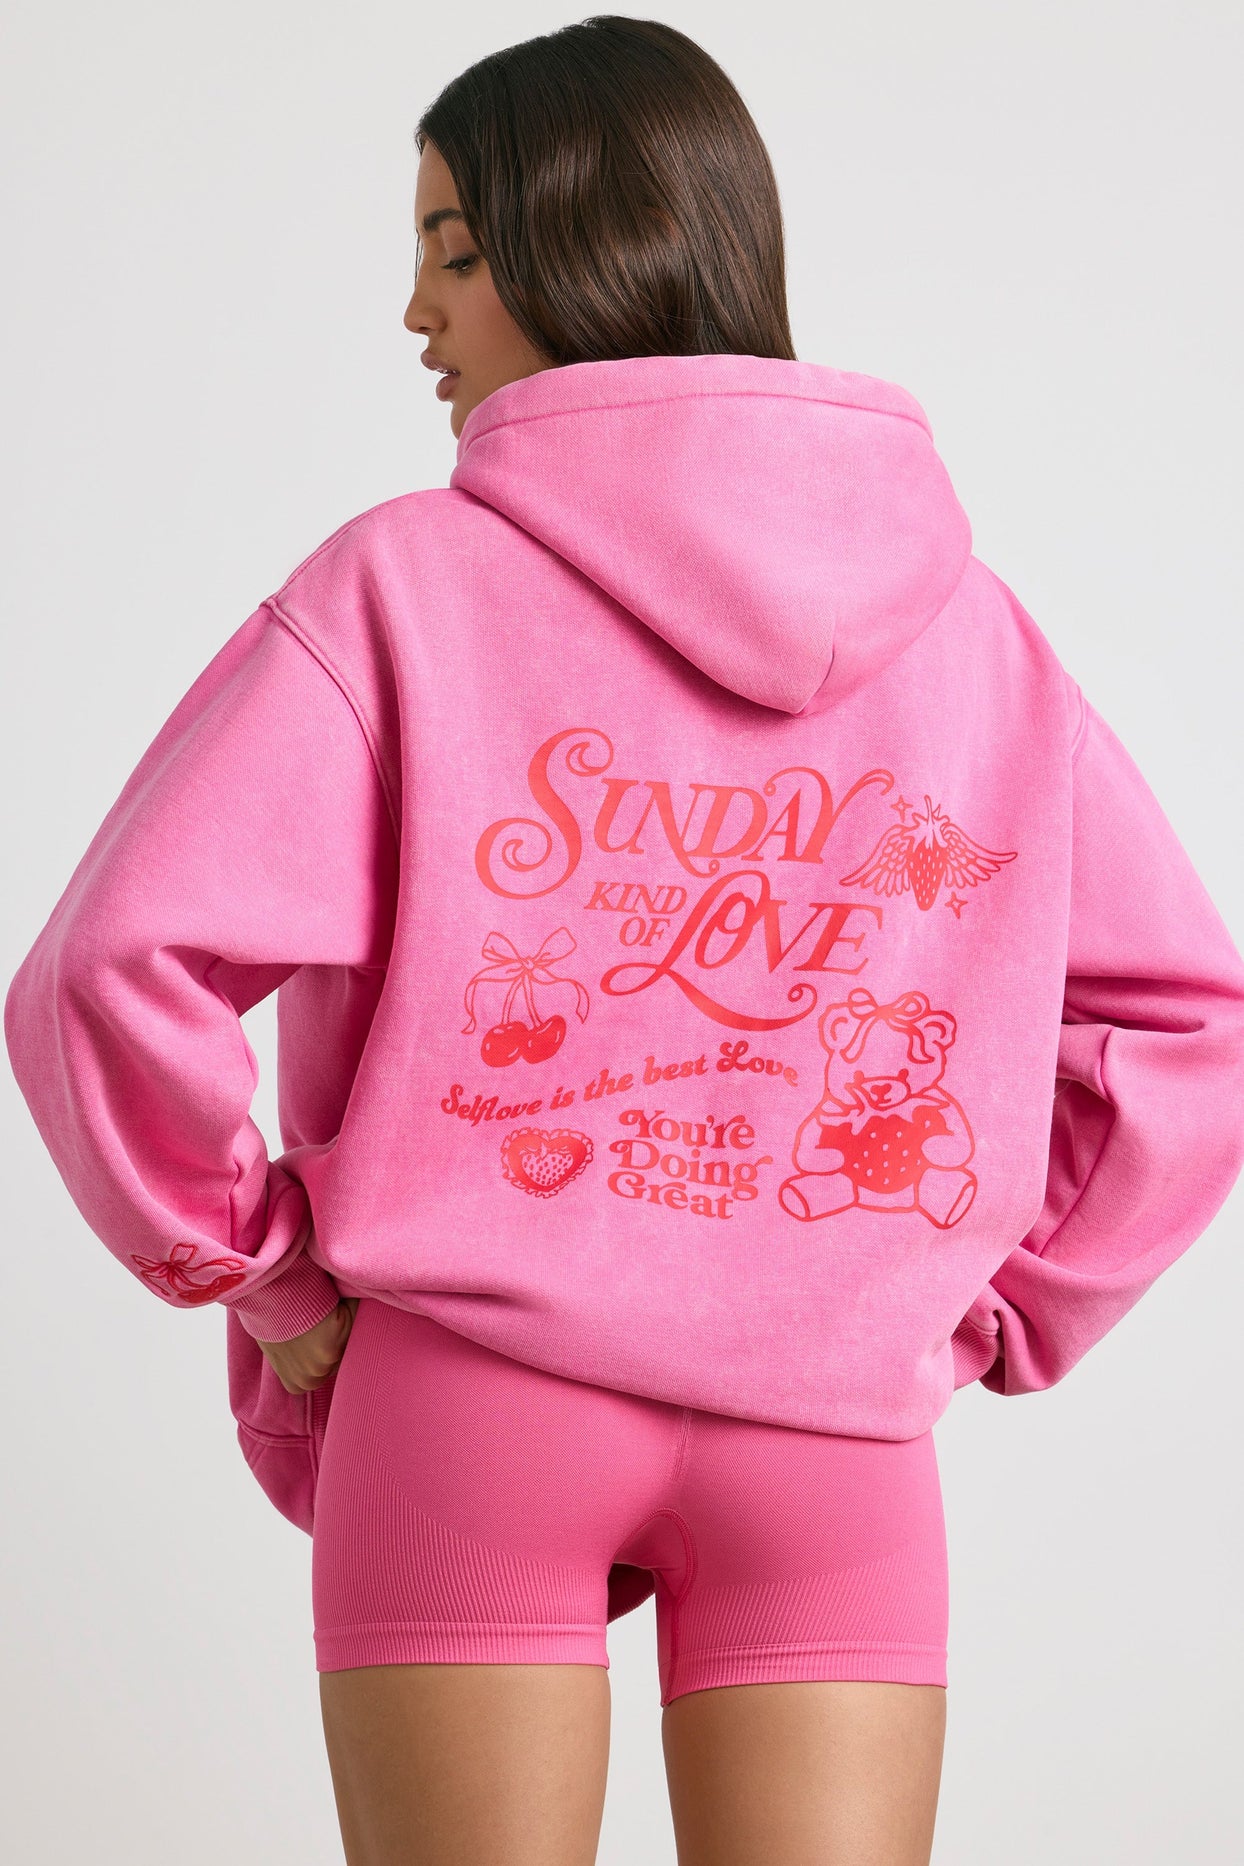 Pink Love Ladies Sweatshirt - Love Sweatshirt - Pink Love Jumper